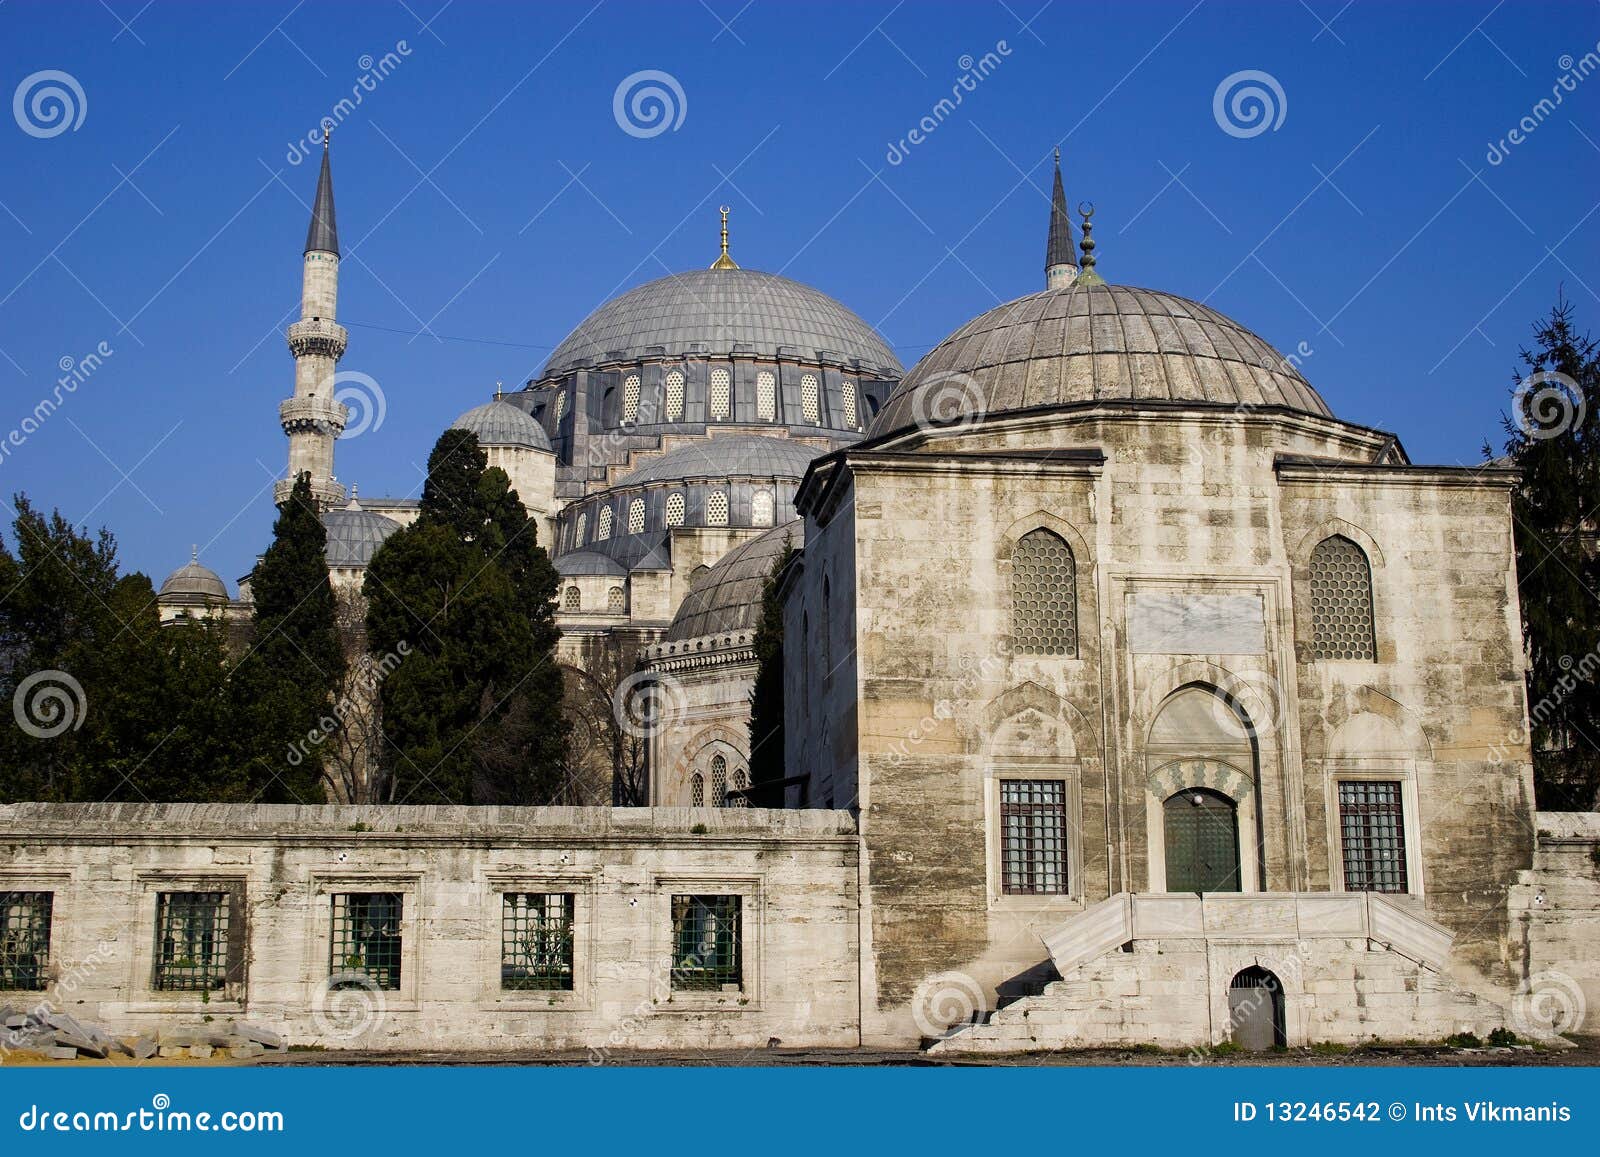 suleymaniye mosque in istanbul